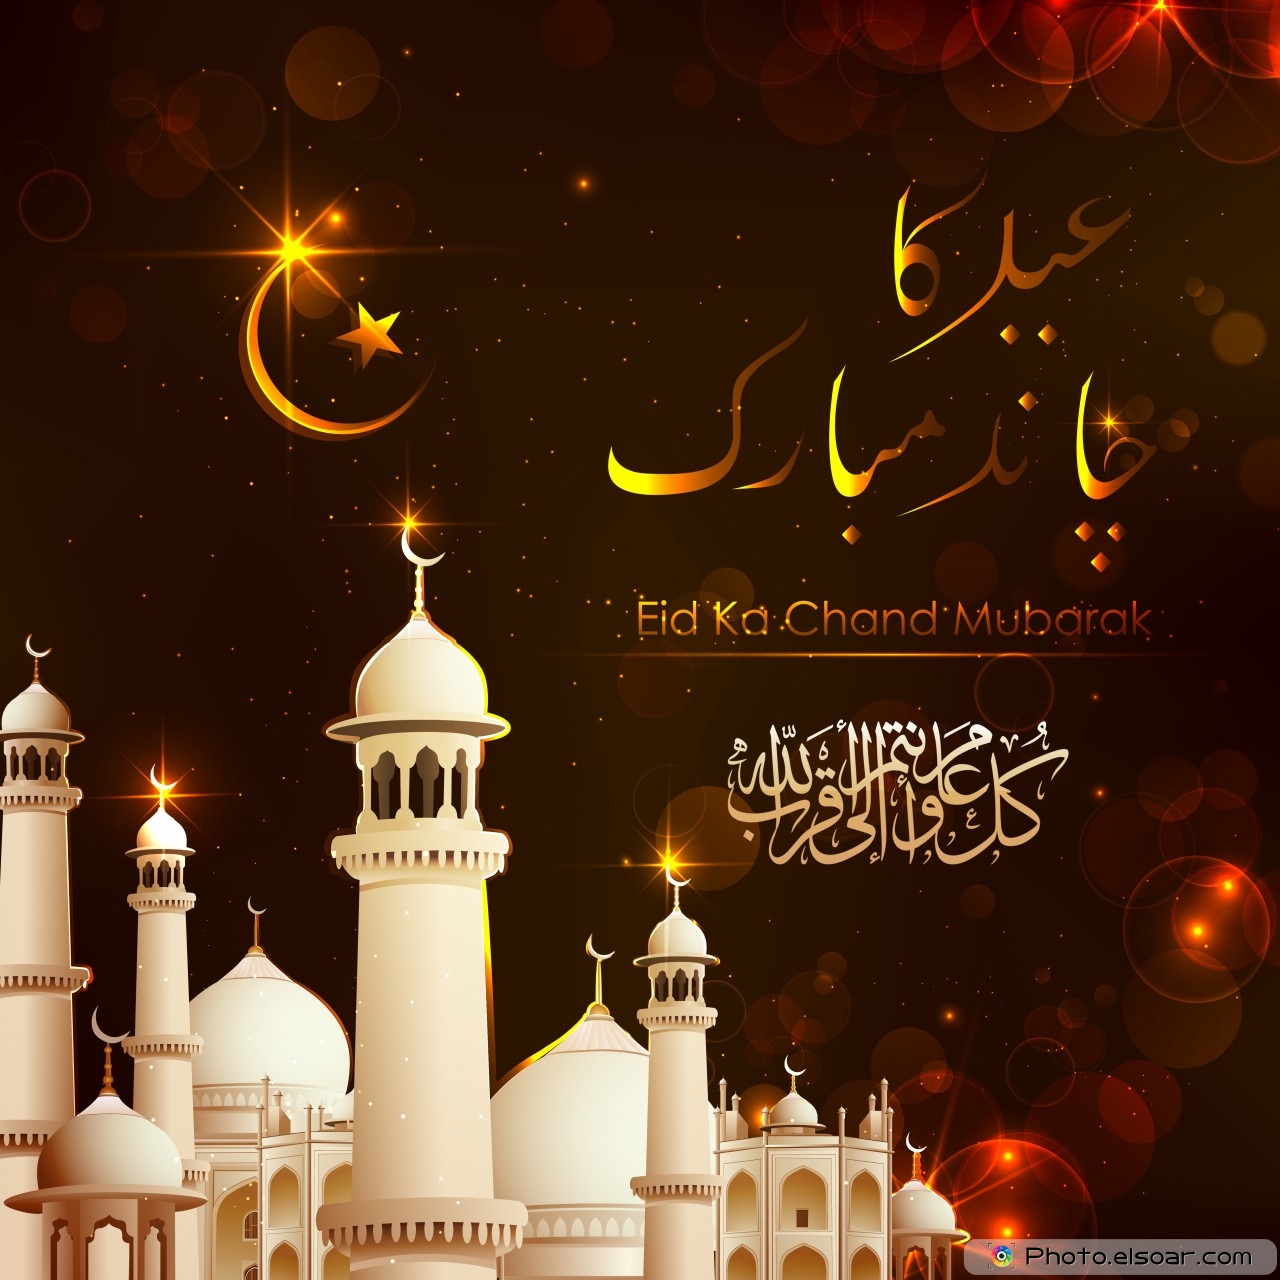 Eid Ka Chand Mubarak Wallpaper - Eid Chand Mubarak , HD Wallpaper & Backgrounds